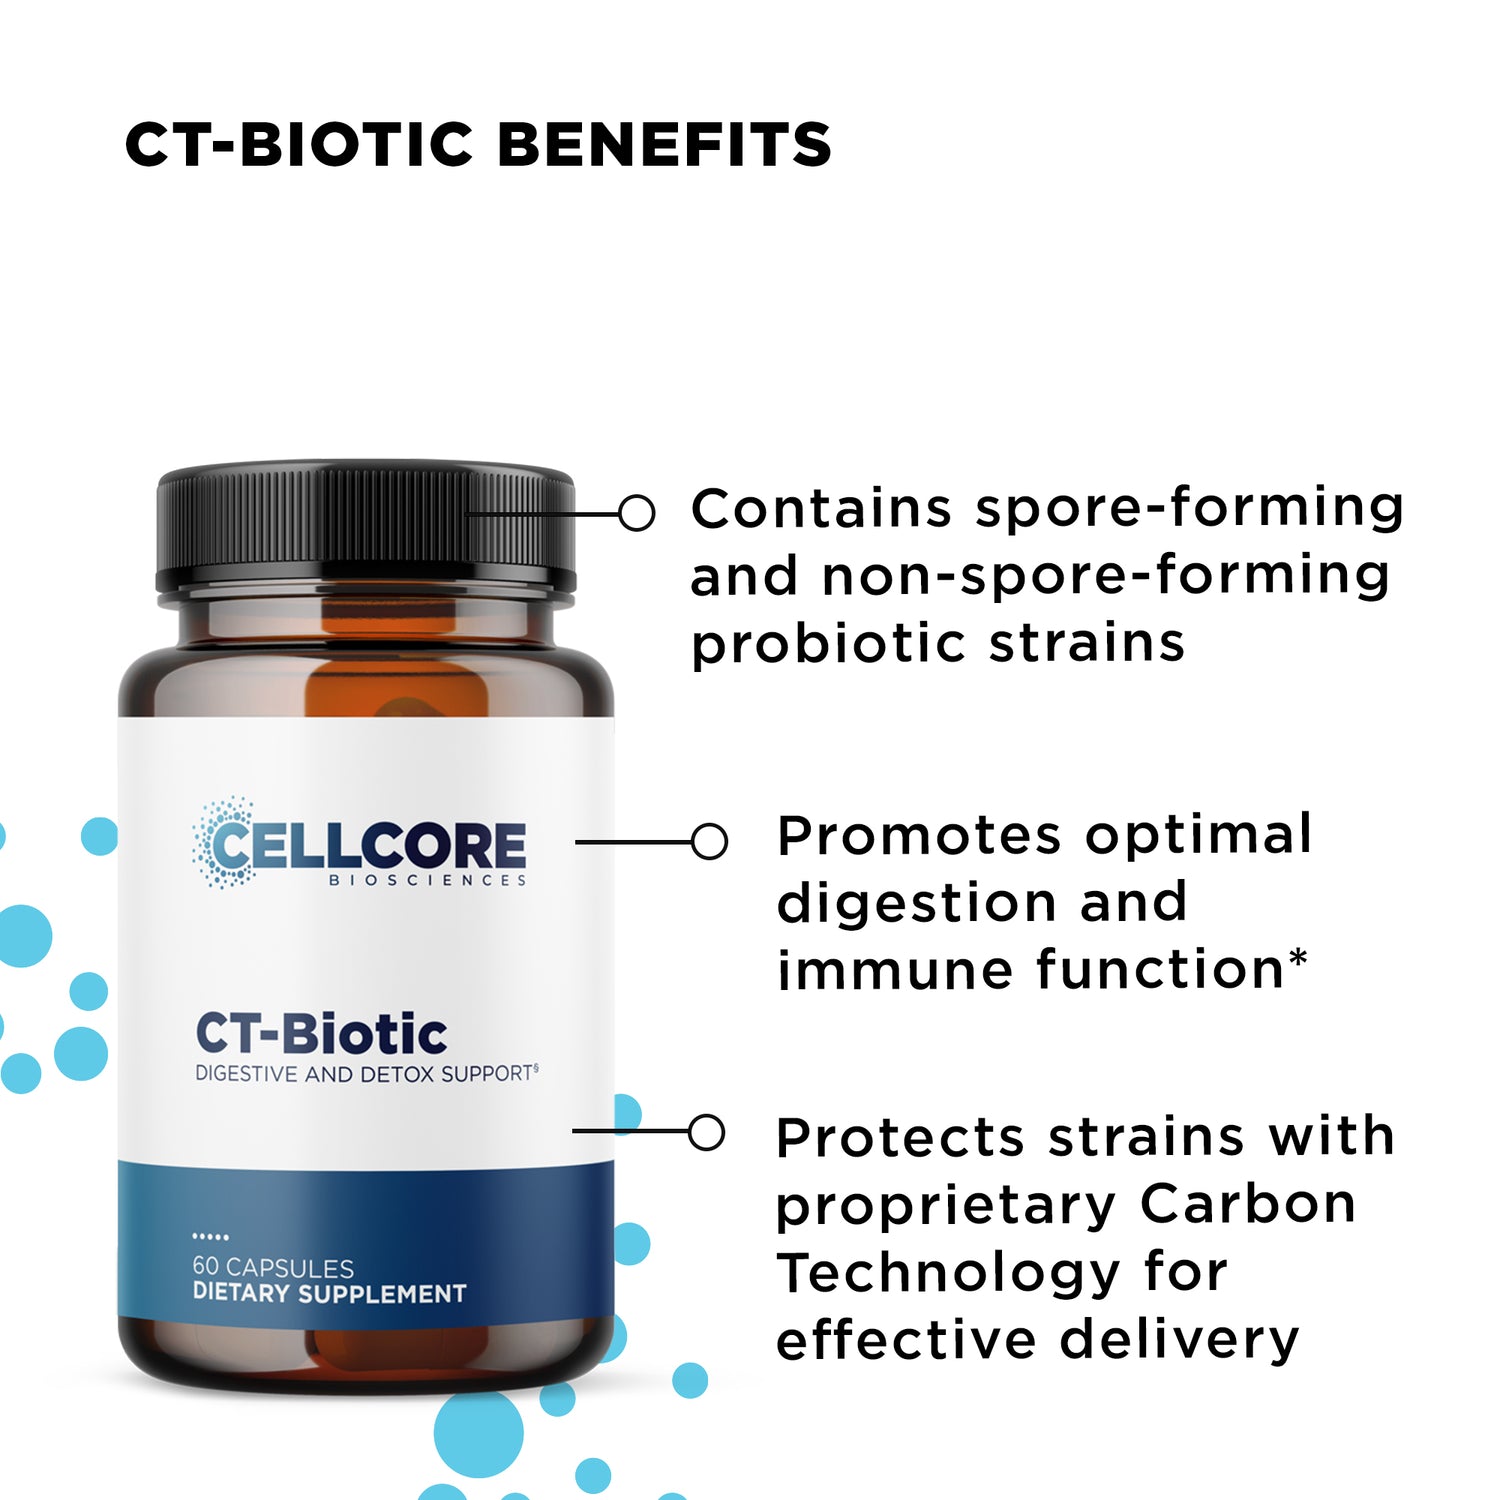 CT-Biotic benefits